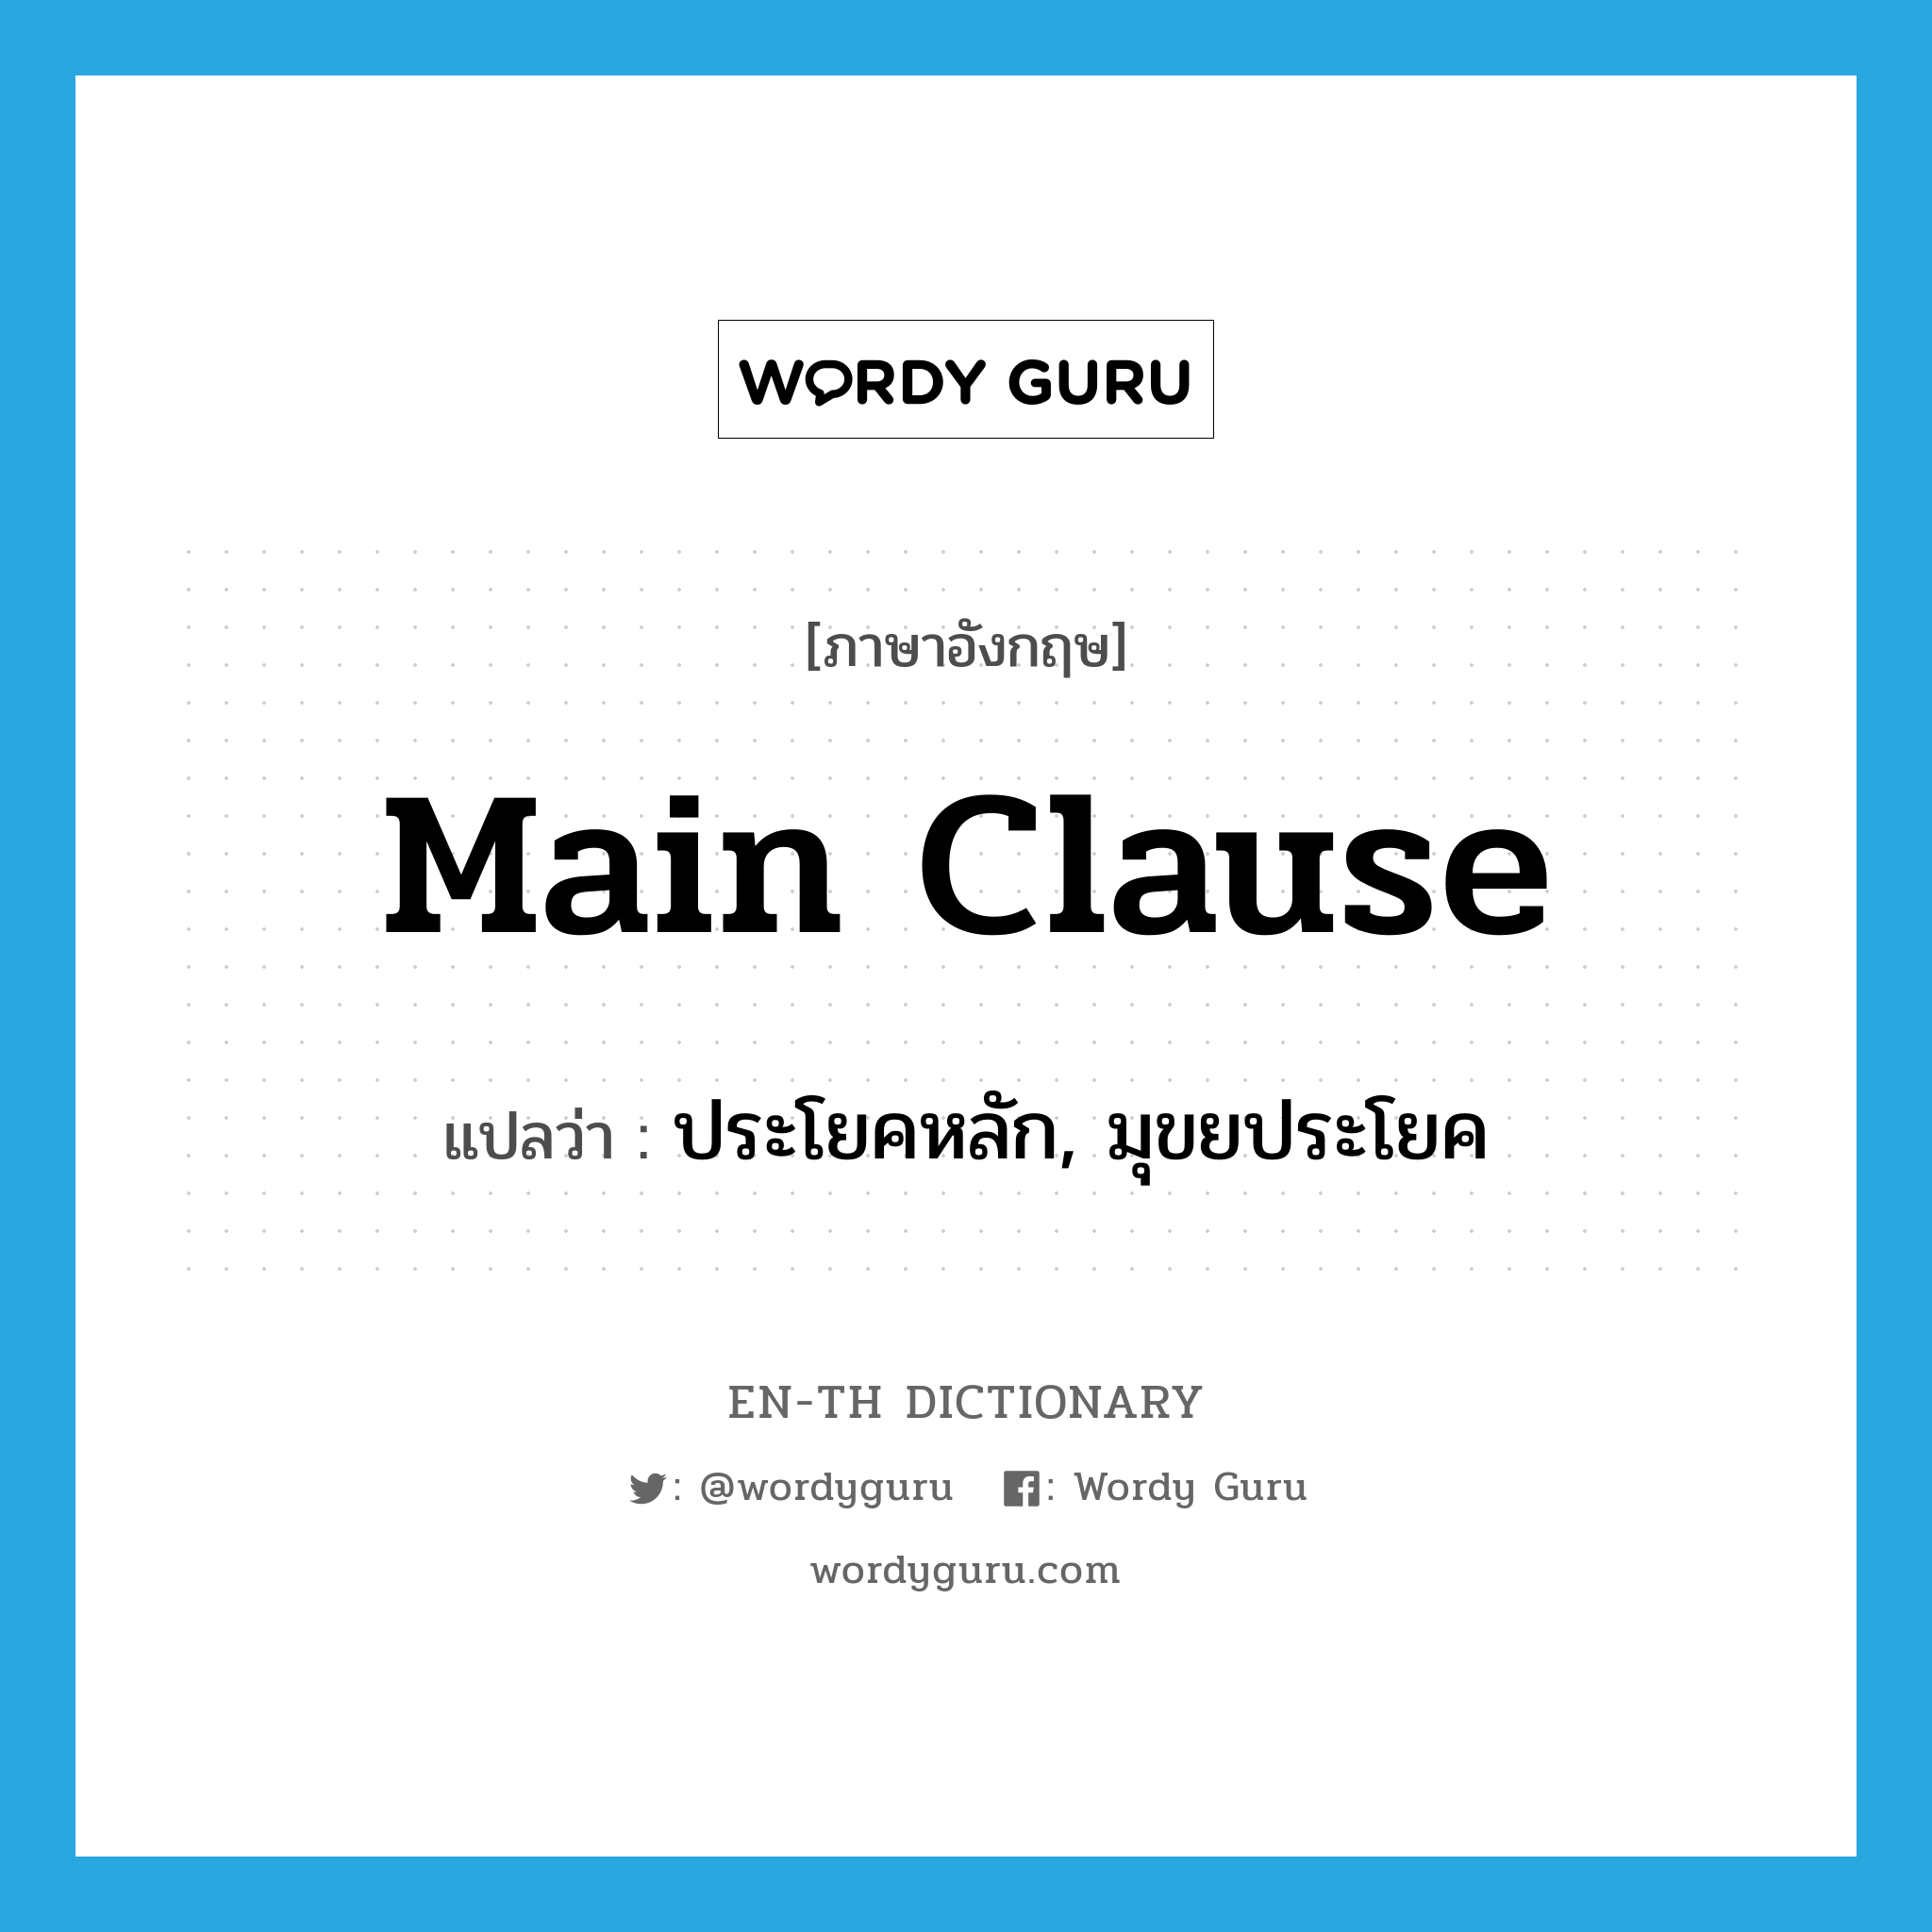 main clause แปลว่า?, คำศัพท์ภาษาอังกฤษ main clause แปลว่า ประโยคหลัก, มุขยประโยค ประเภท N หมวด N